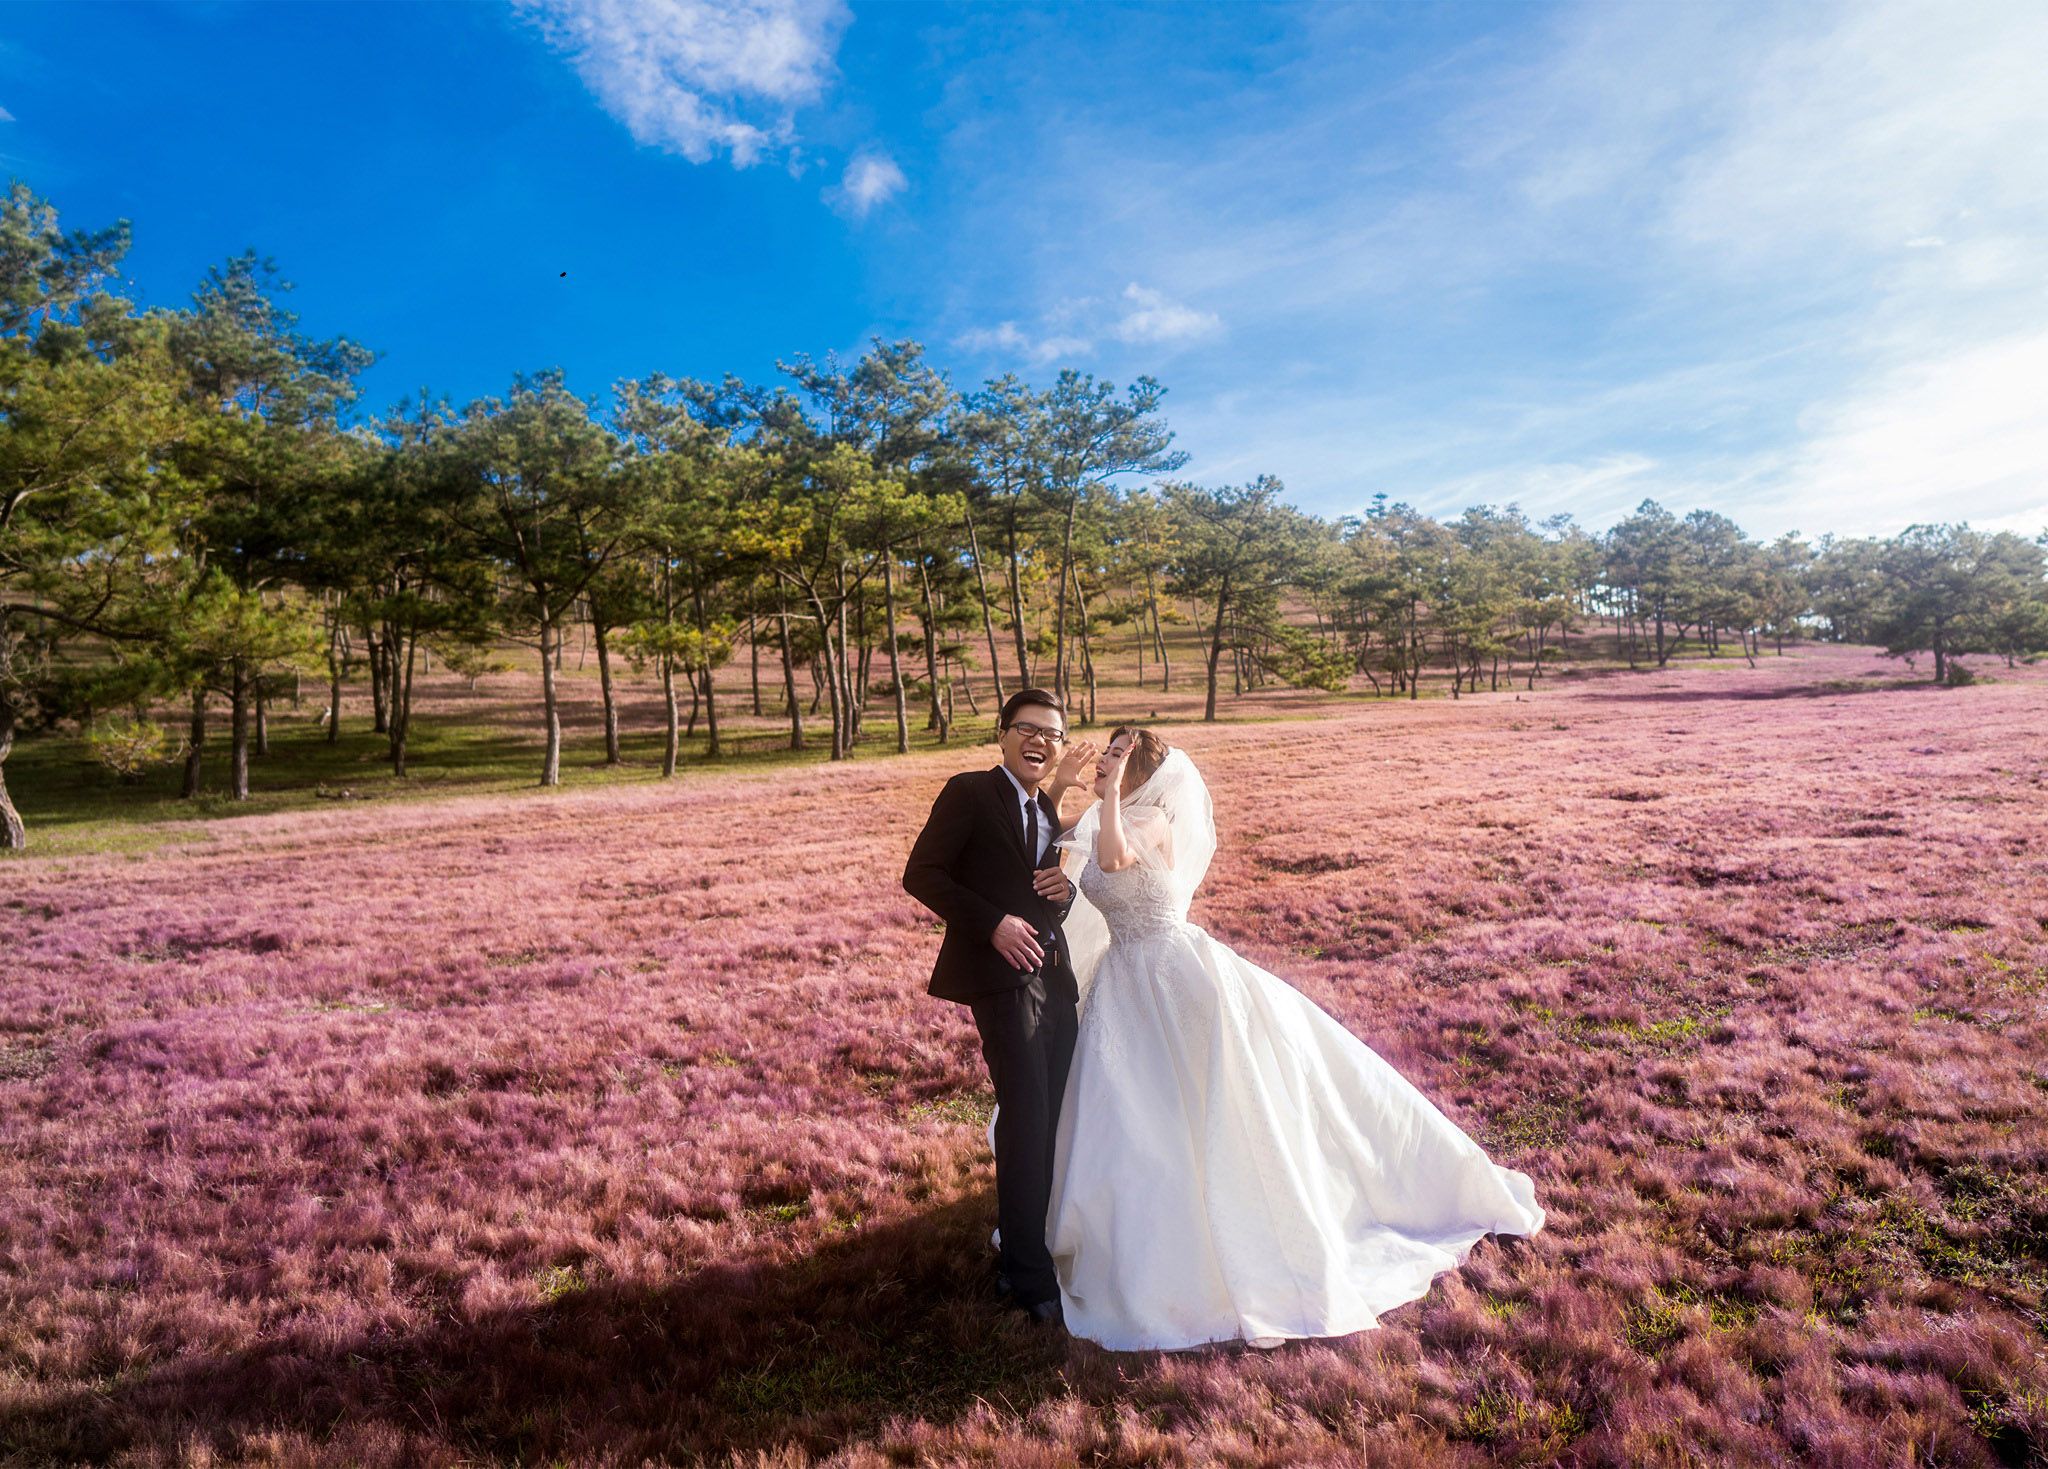 Album cưới ở Đà Lạt tại đồi cỏ hồng